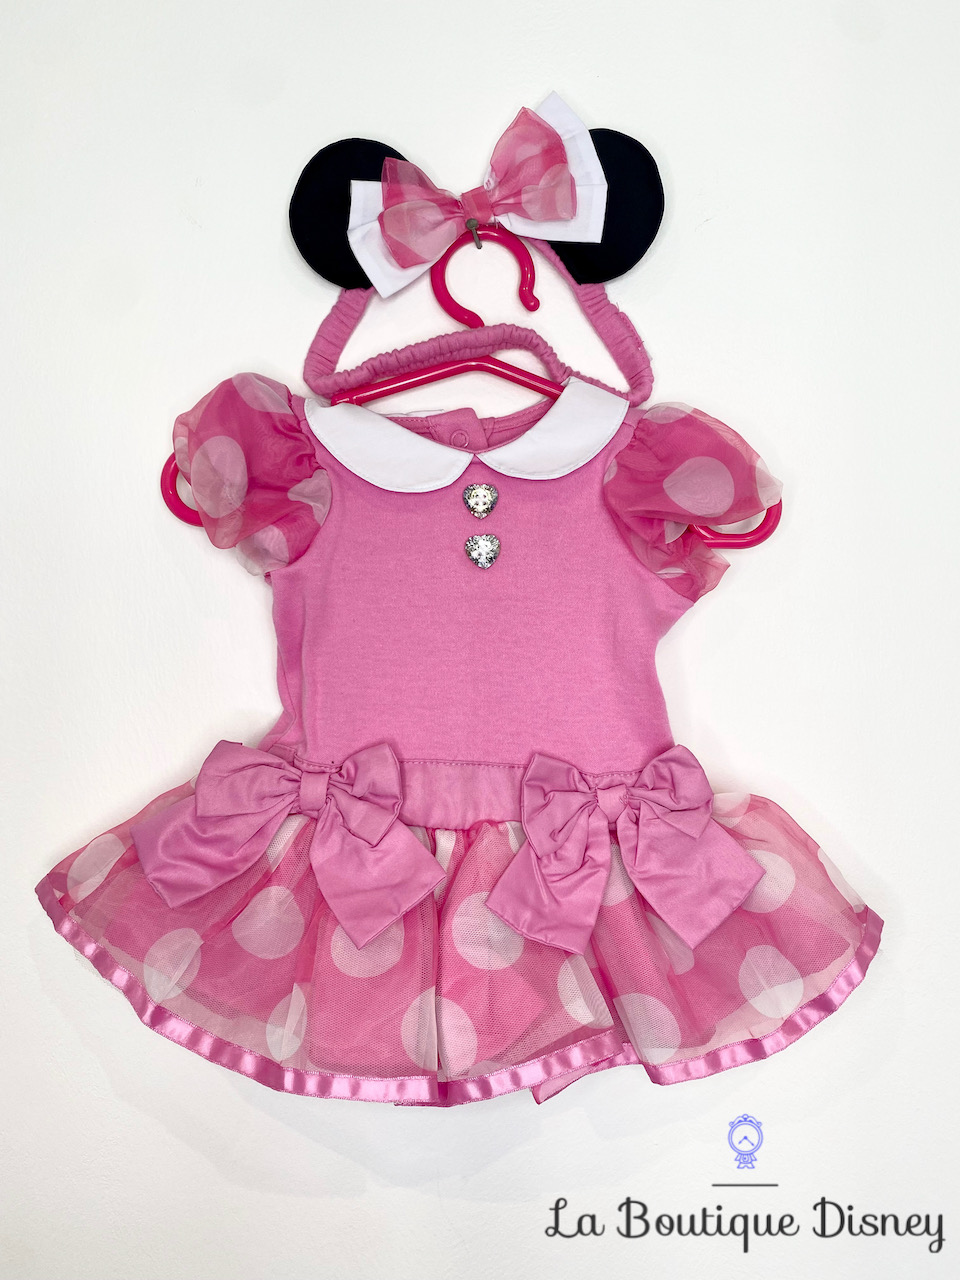 Costume bébé Minnie Mouse - Tenue Minnie Mouse bébé - Couleur: Rose -  Taille: 3 ans 